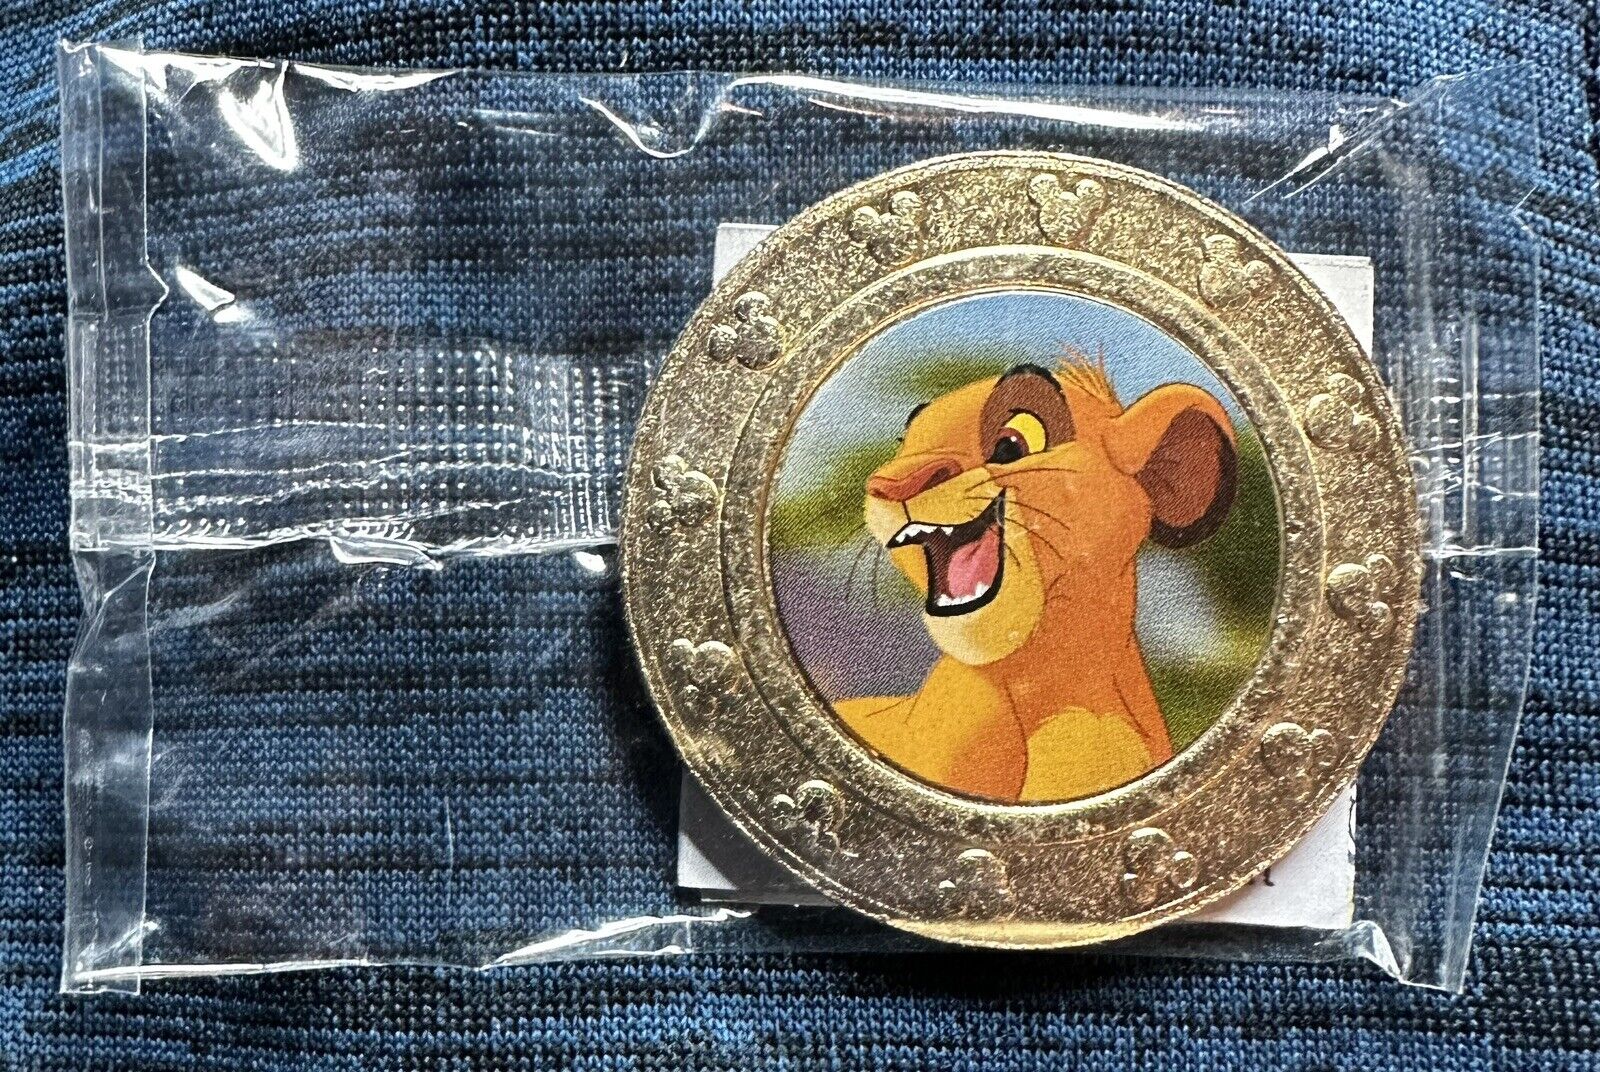 Disney Wonderball Coin 100 Year Anniversary - Simba